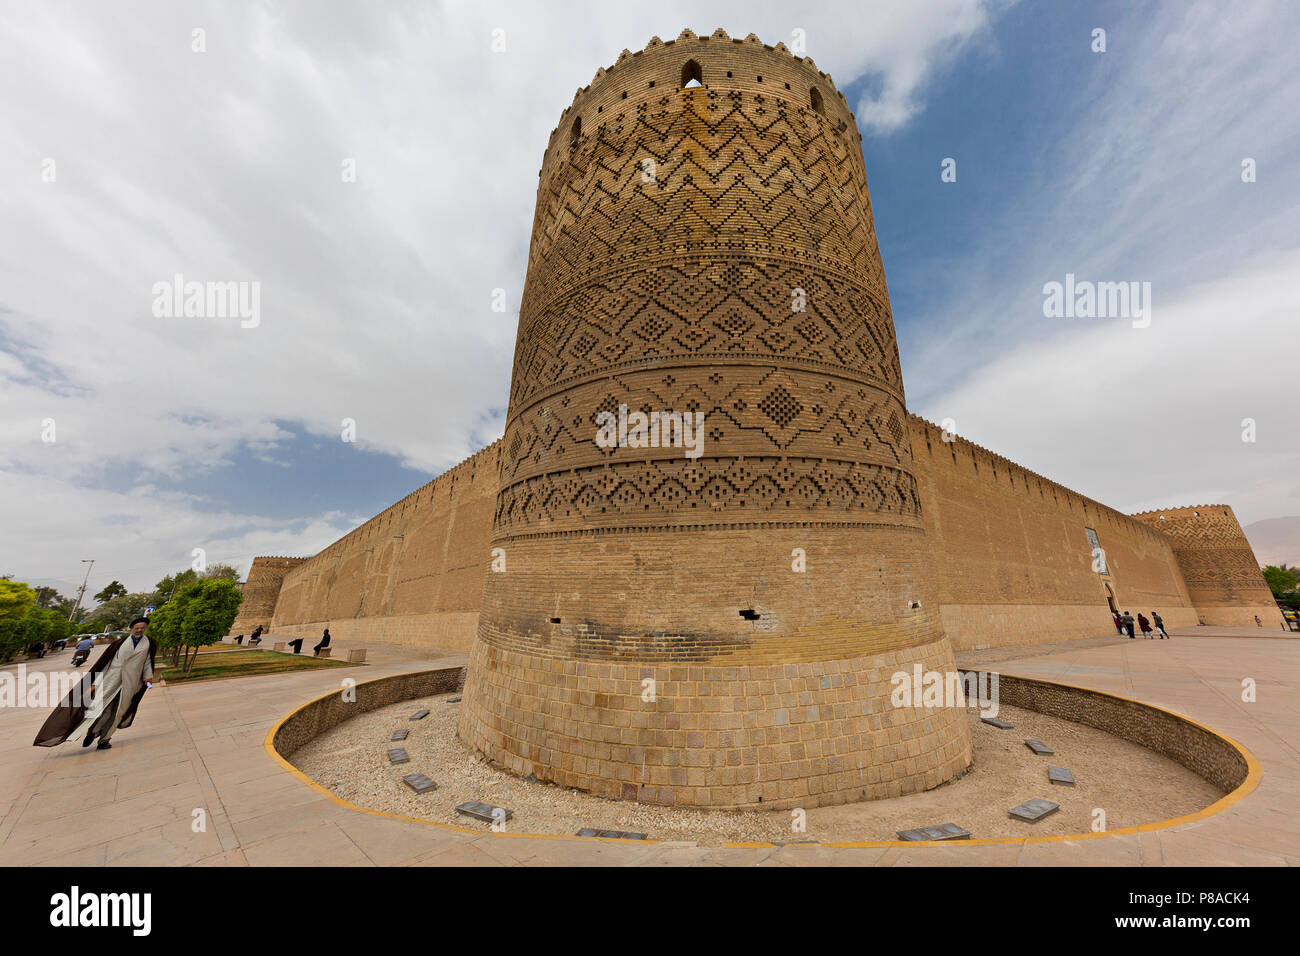 Vue sur le château de Karim Khan, avec un homme dans les vêtements religieux à proximité, dans la partie ancienne de Shiraz, Iran. Banque D'Images